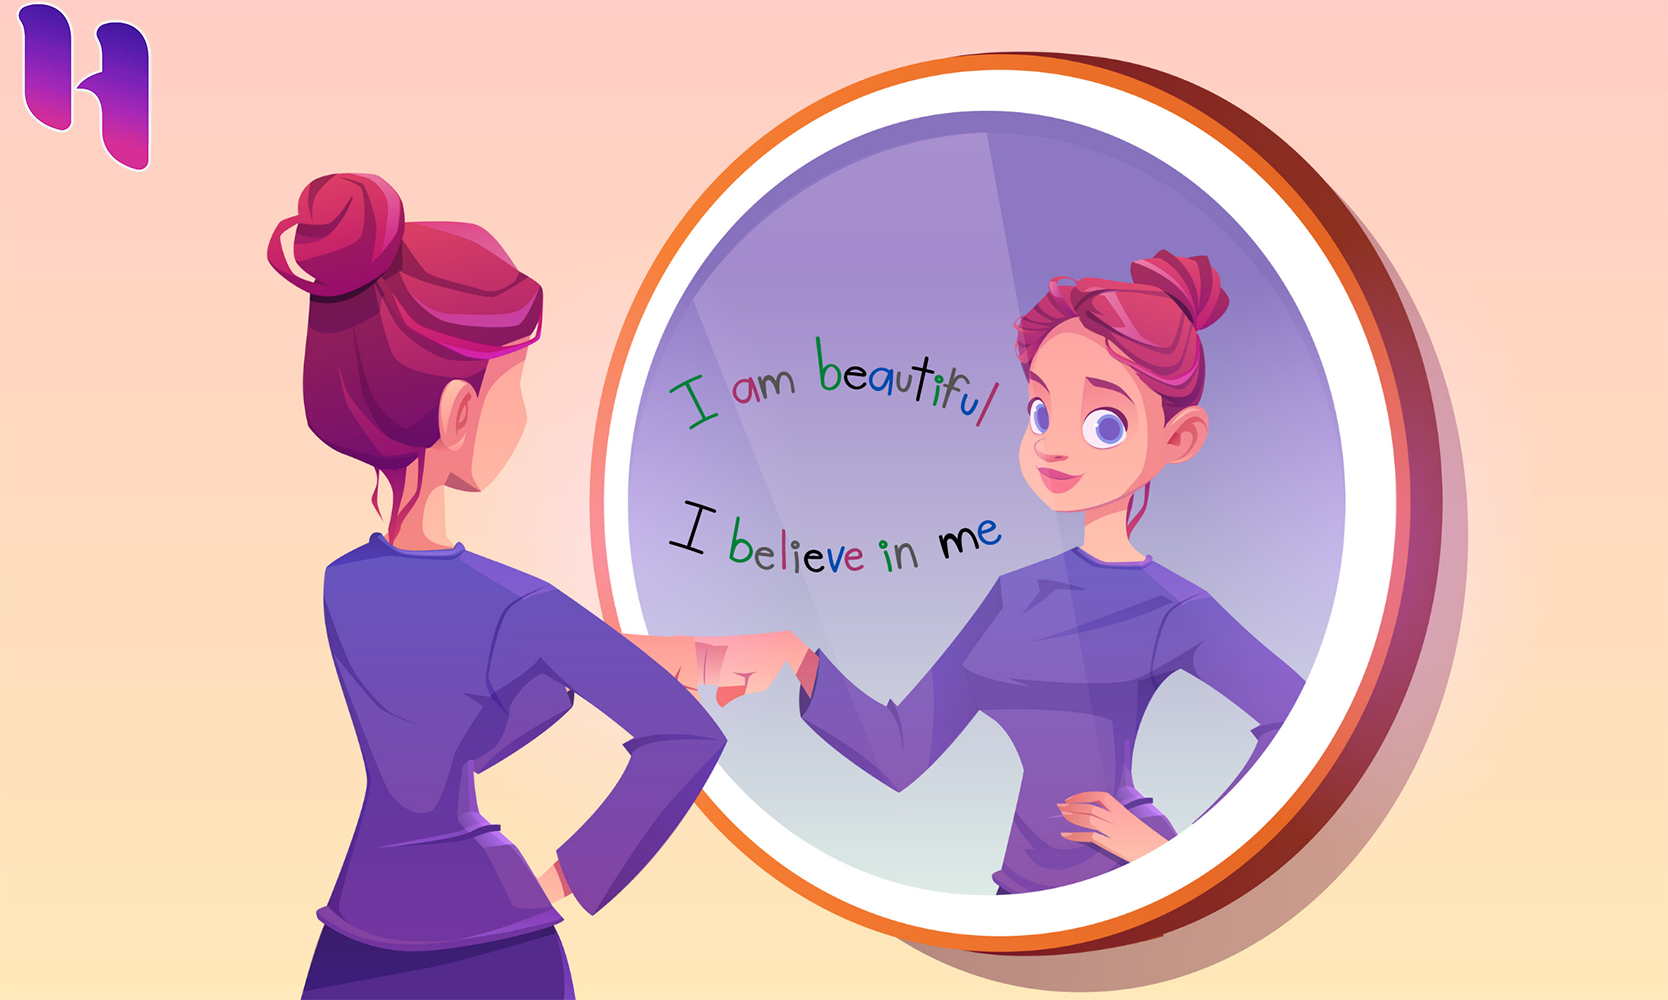 در آینه به خود نگاه کنید و جملات زیبا بگویید